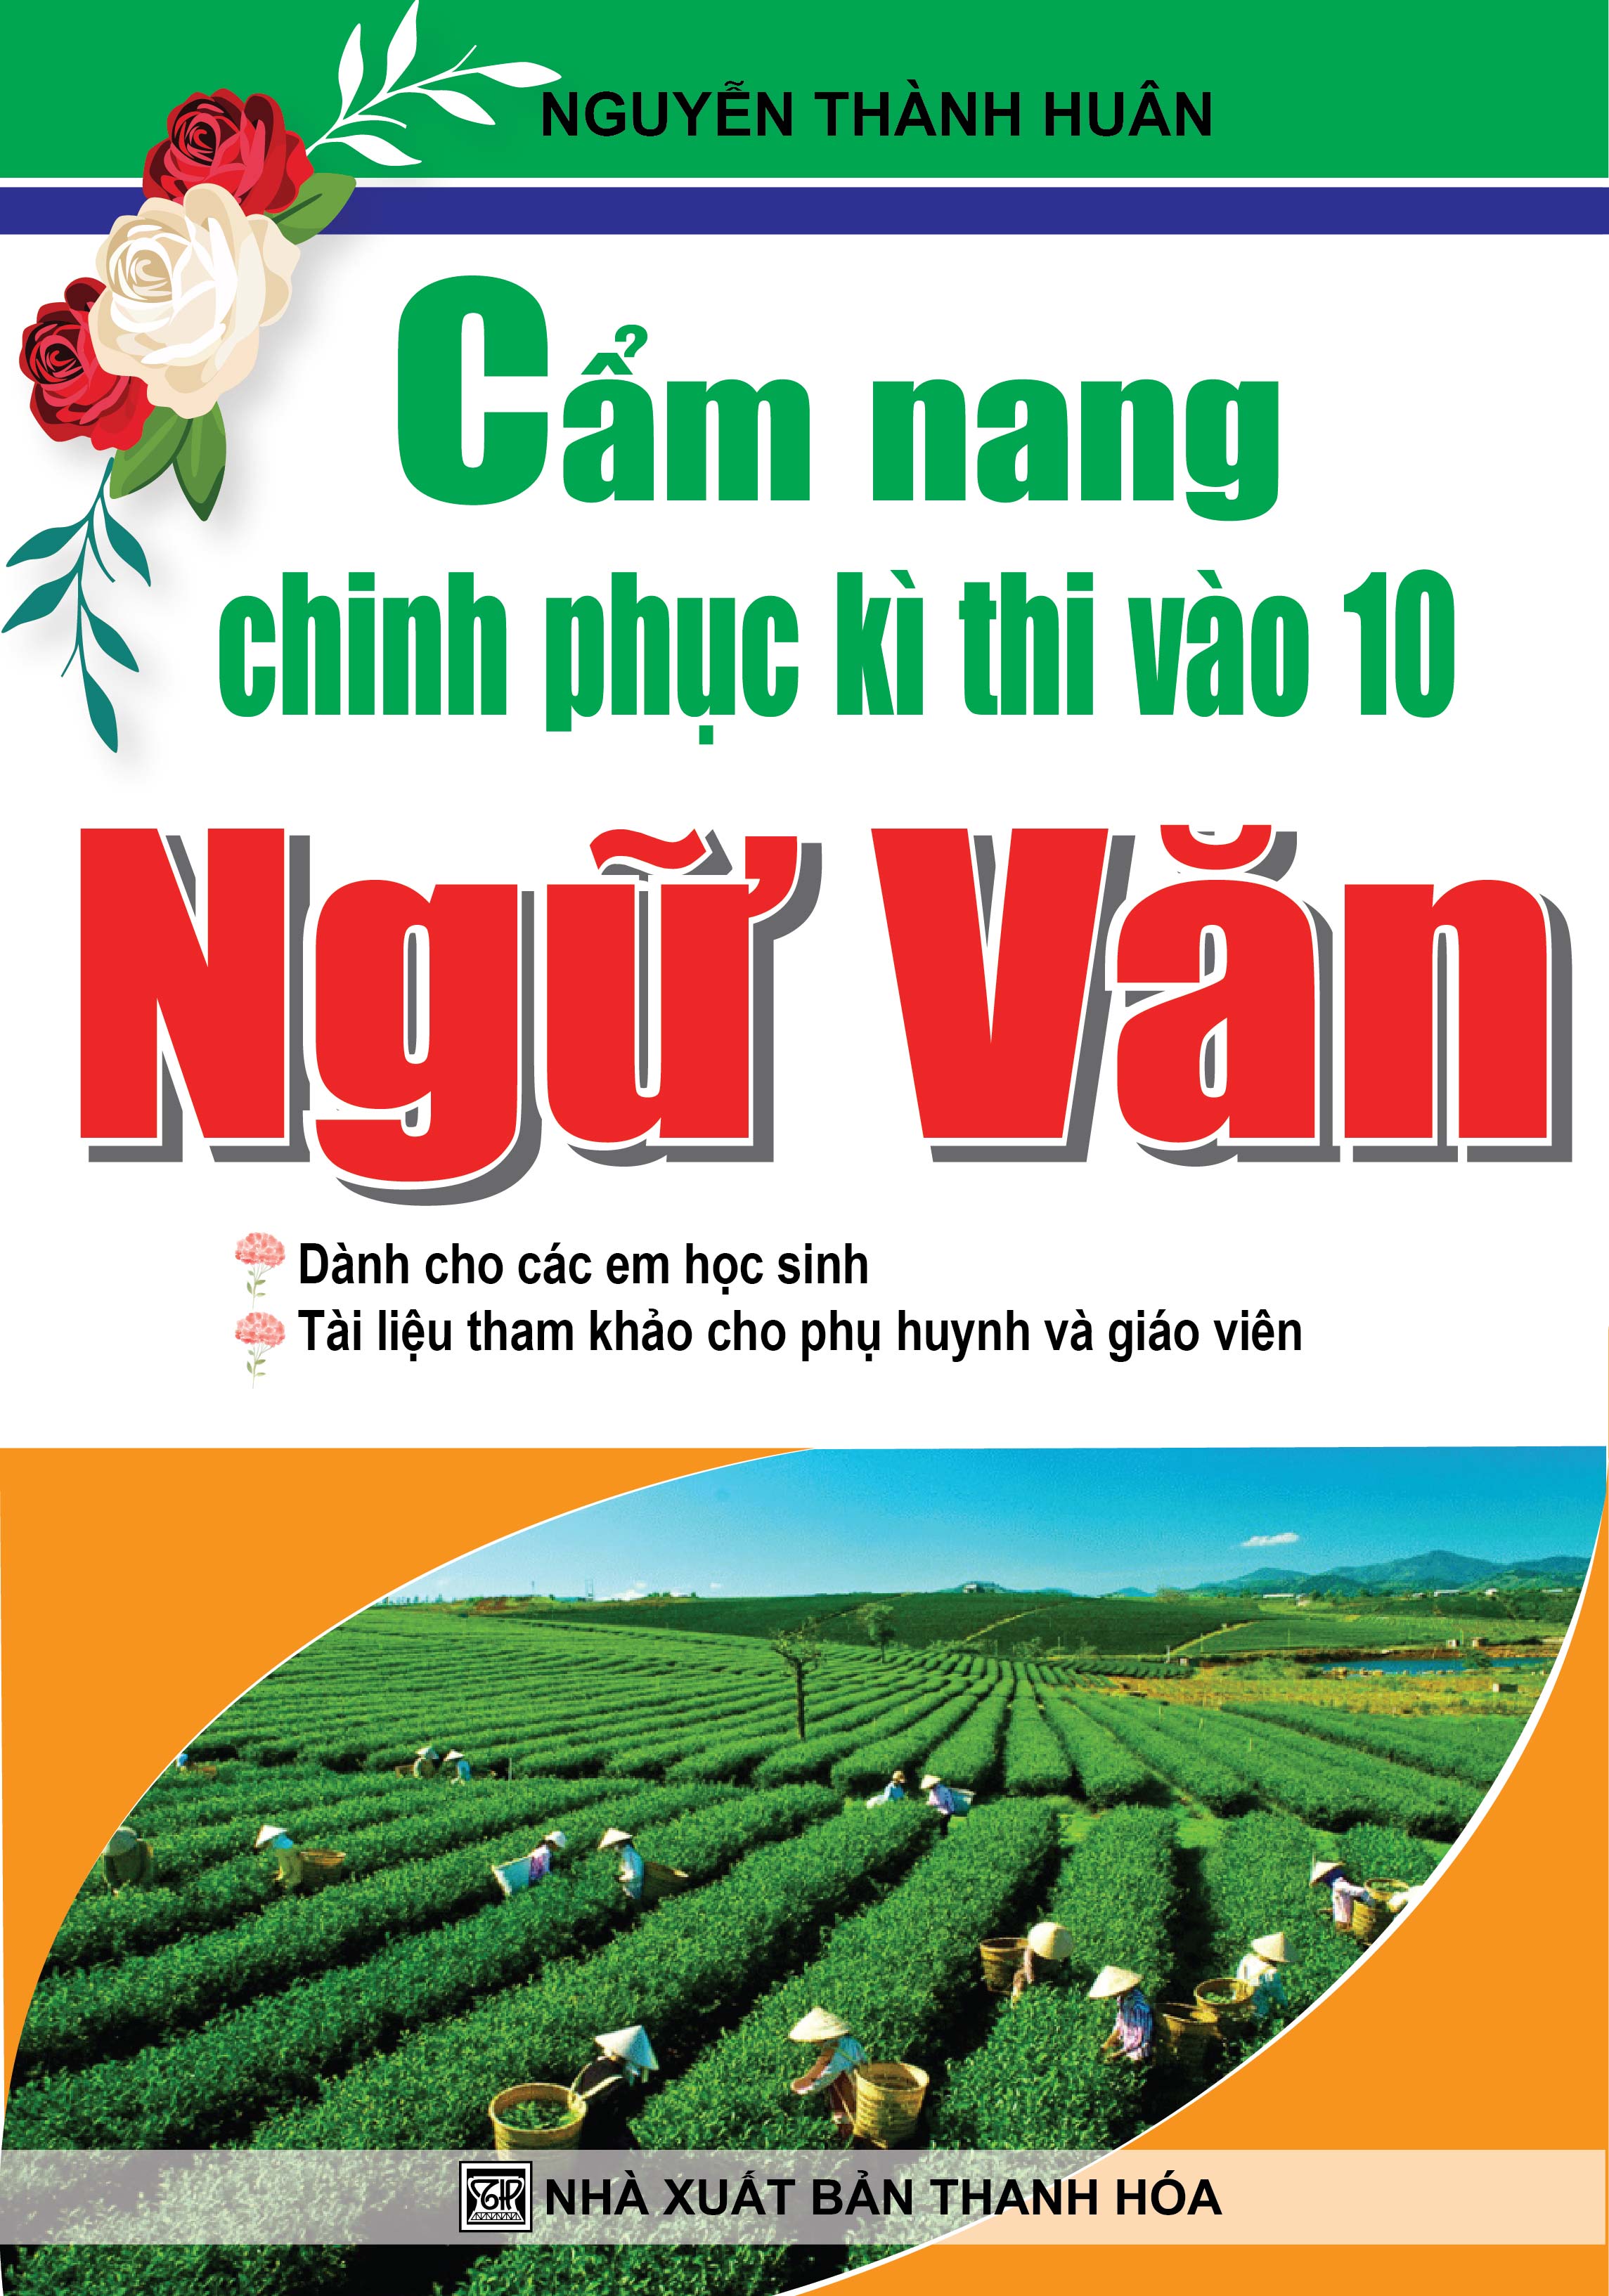 Bìa trước Cẩm Nang Chinh Phục Kì Thi Vào 10 Ngữ Văn 